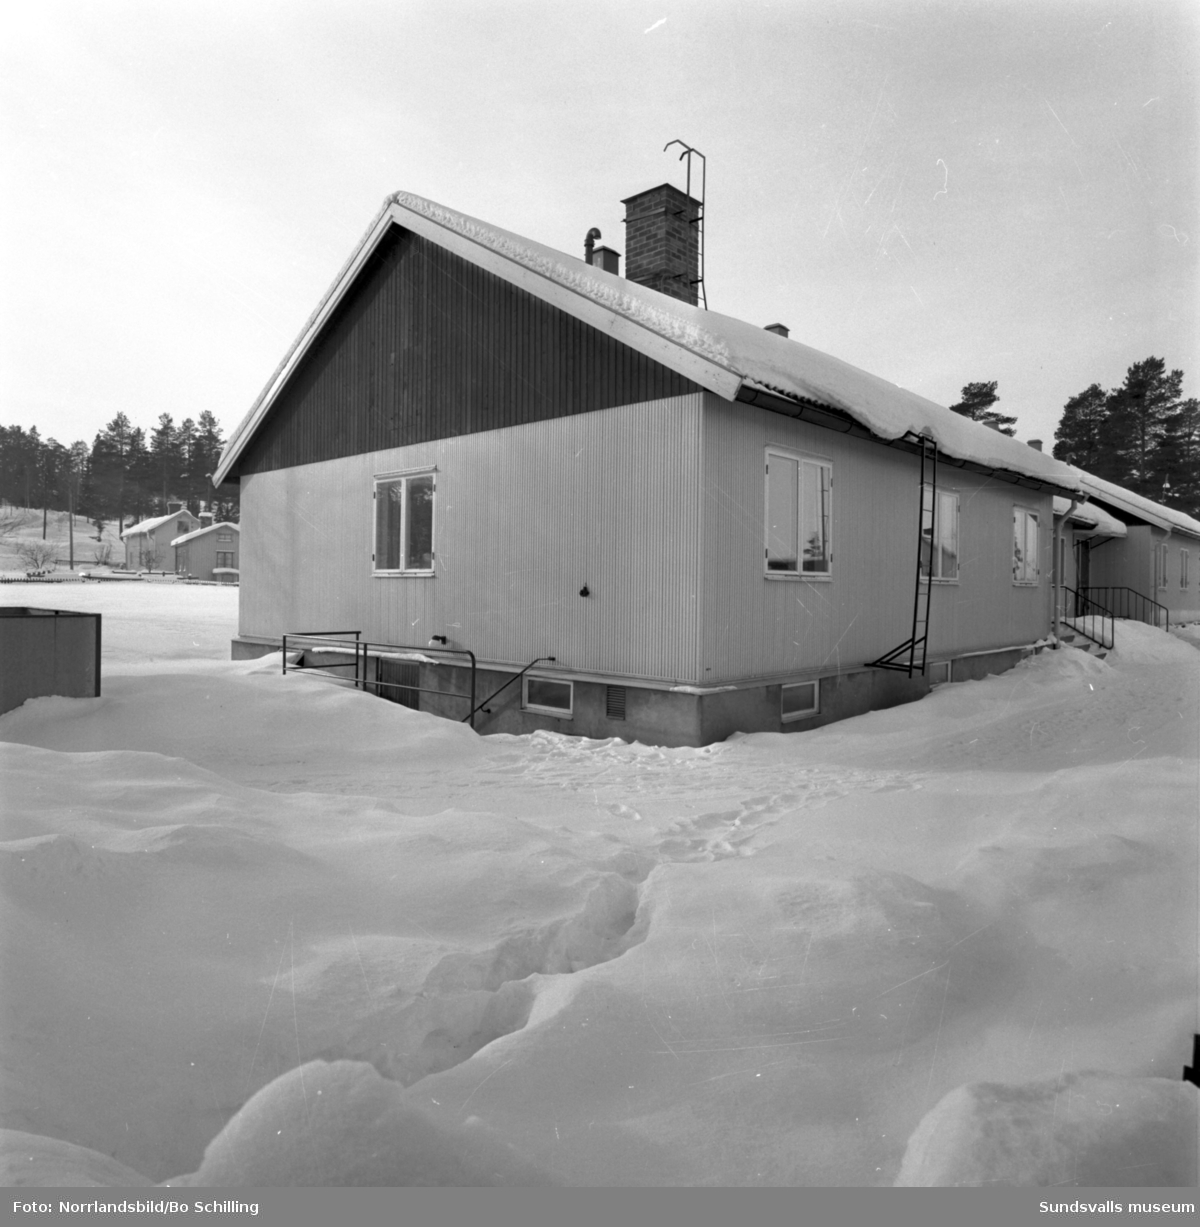 Husfasader på Södermalm i Sundsvall. Fredsgatan 34-38.